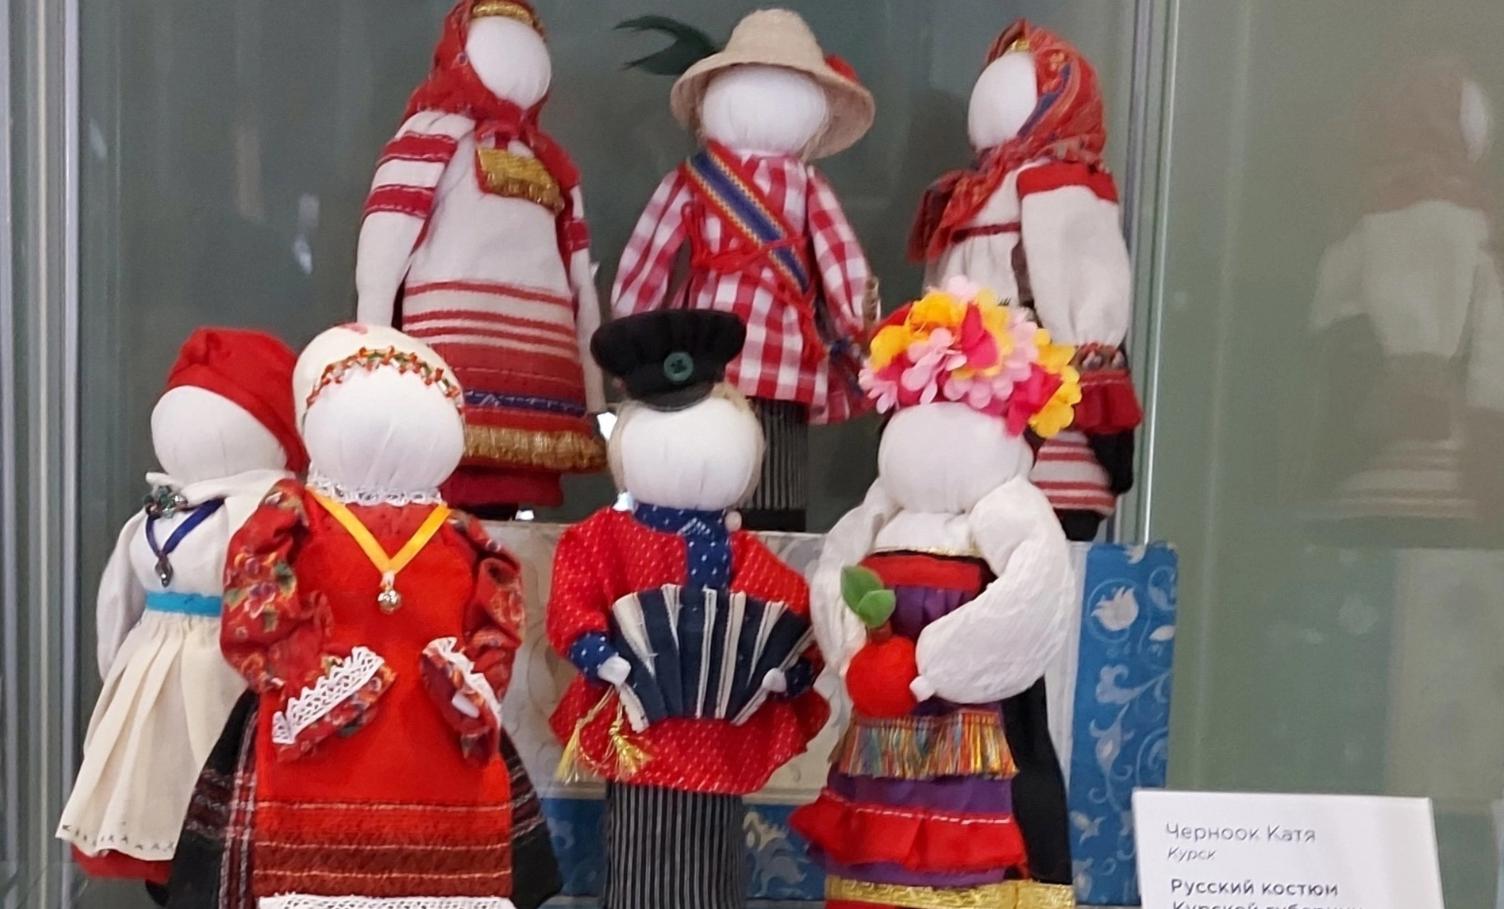 Кукольная композиция курской мастерицы участвует в выставке в Москве